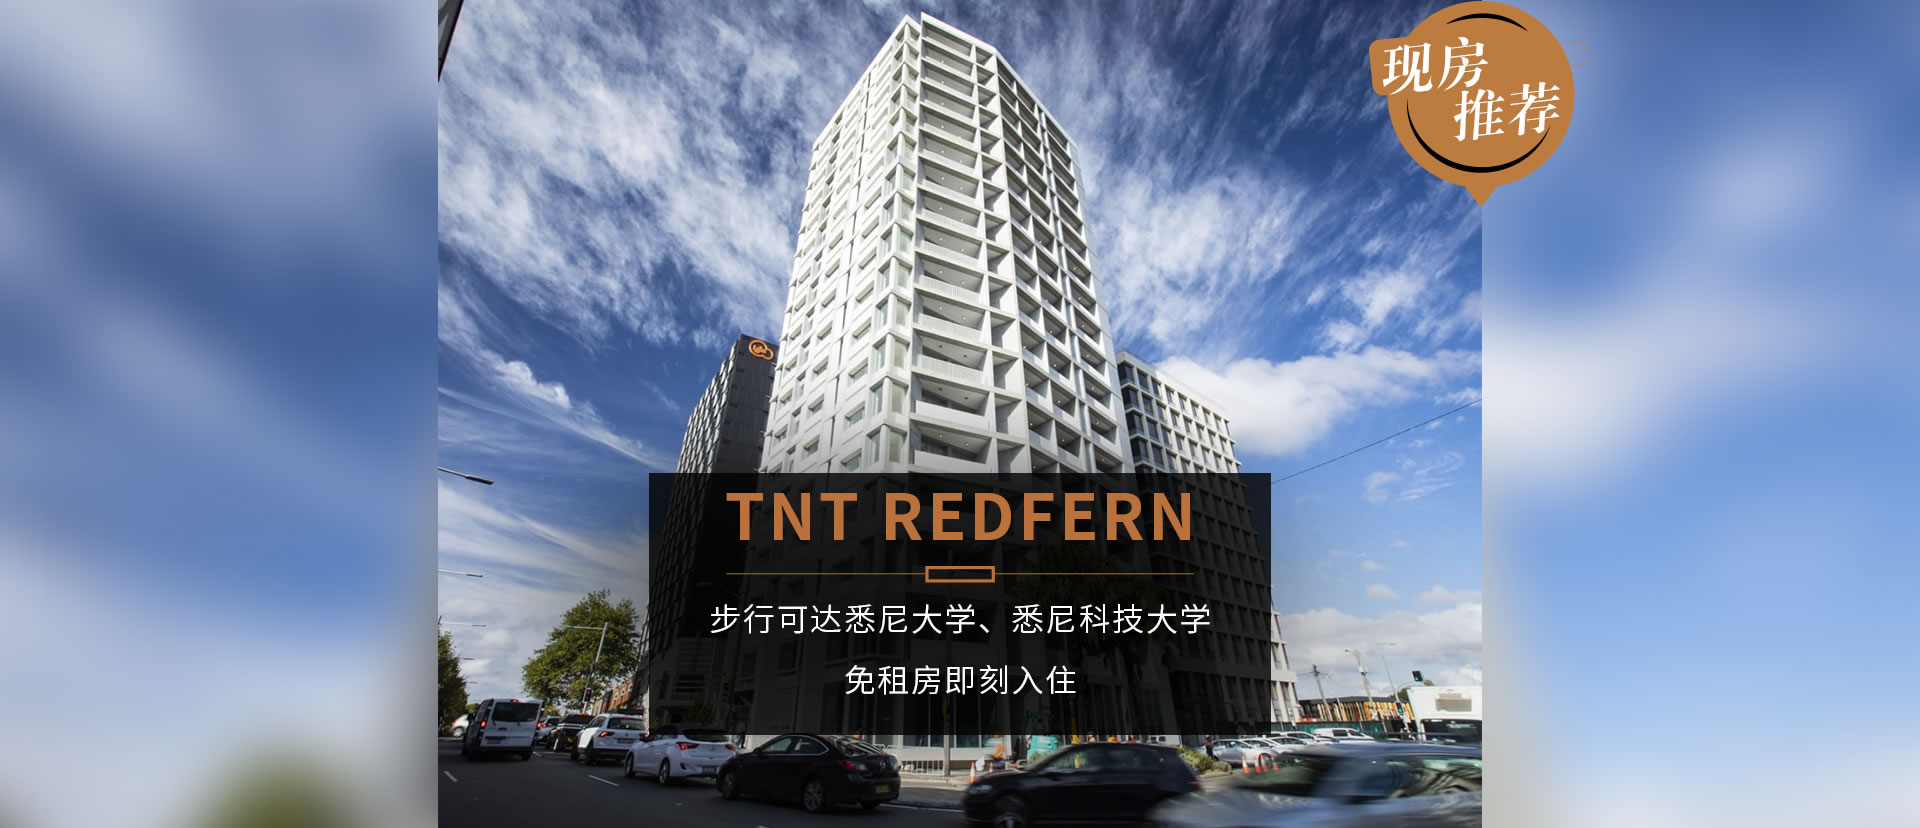 悉尼现房公寓 · TNT REDFERN